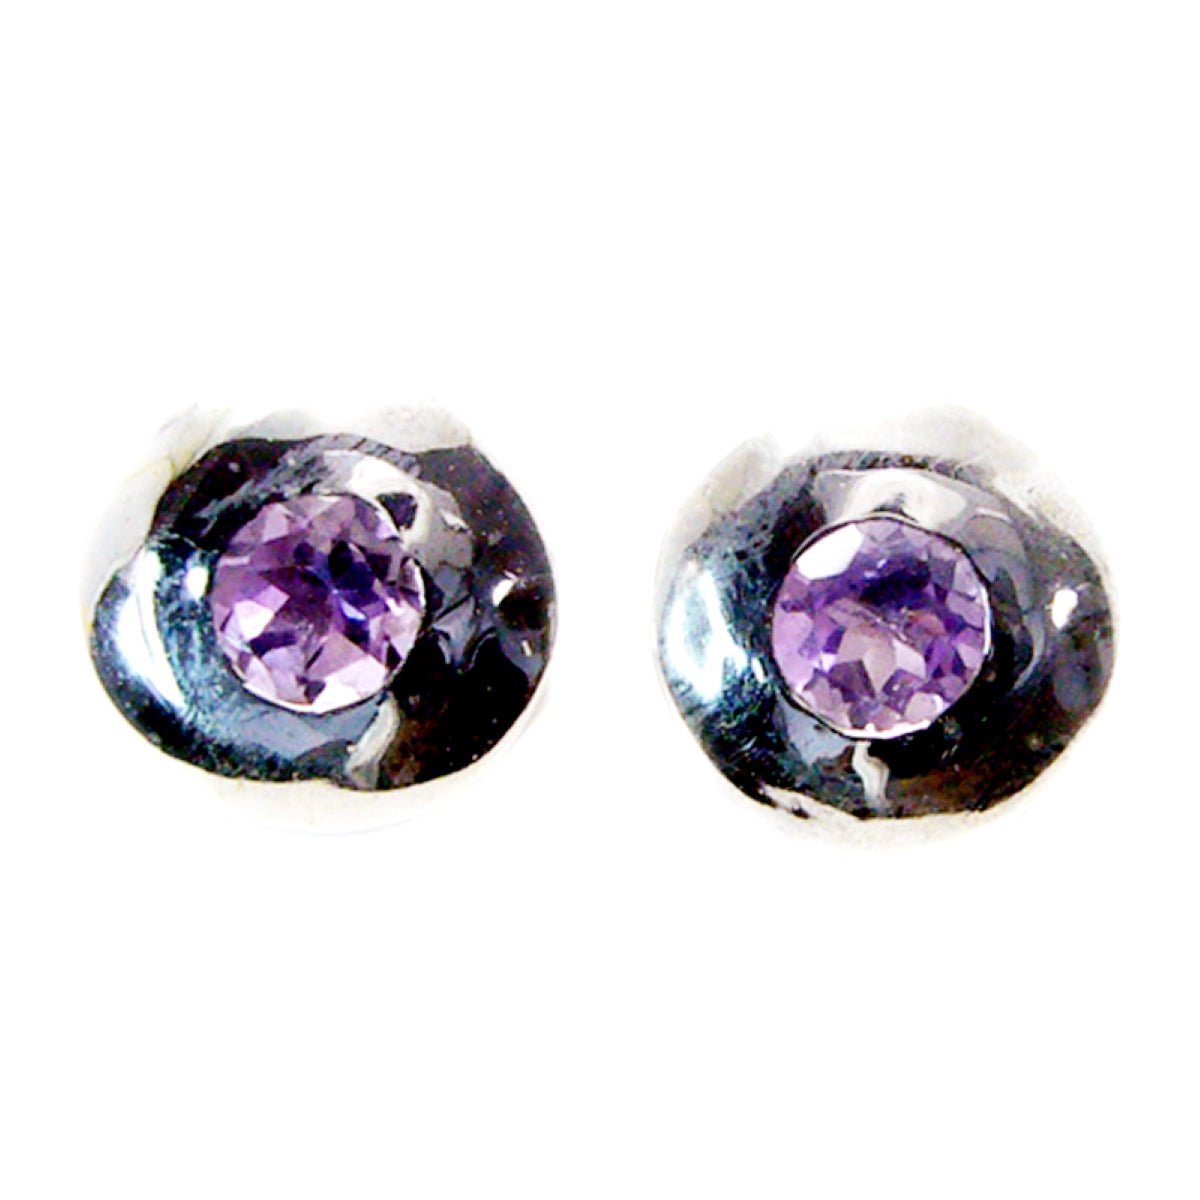 Riyo Good Gemstones round Faceted Purple Amethyst Silver Earrings mom birthday gift